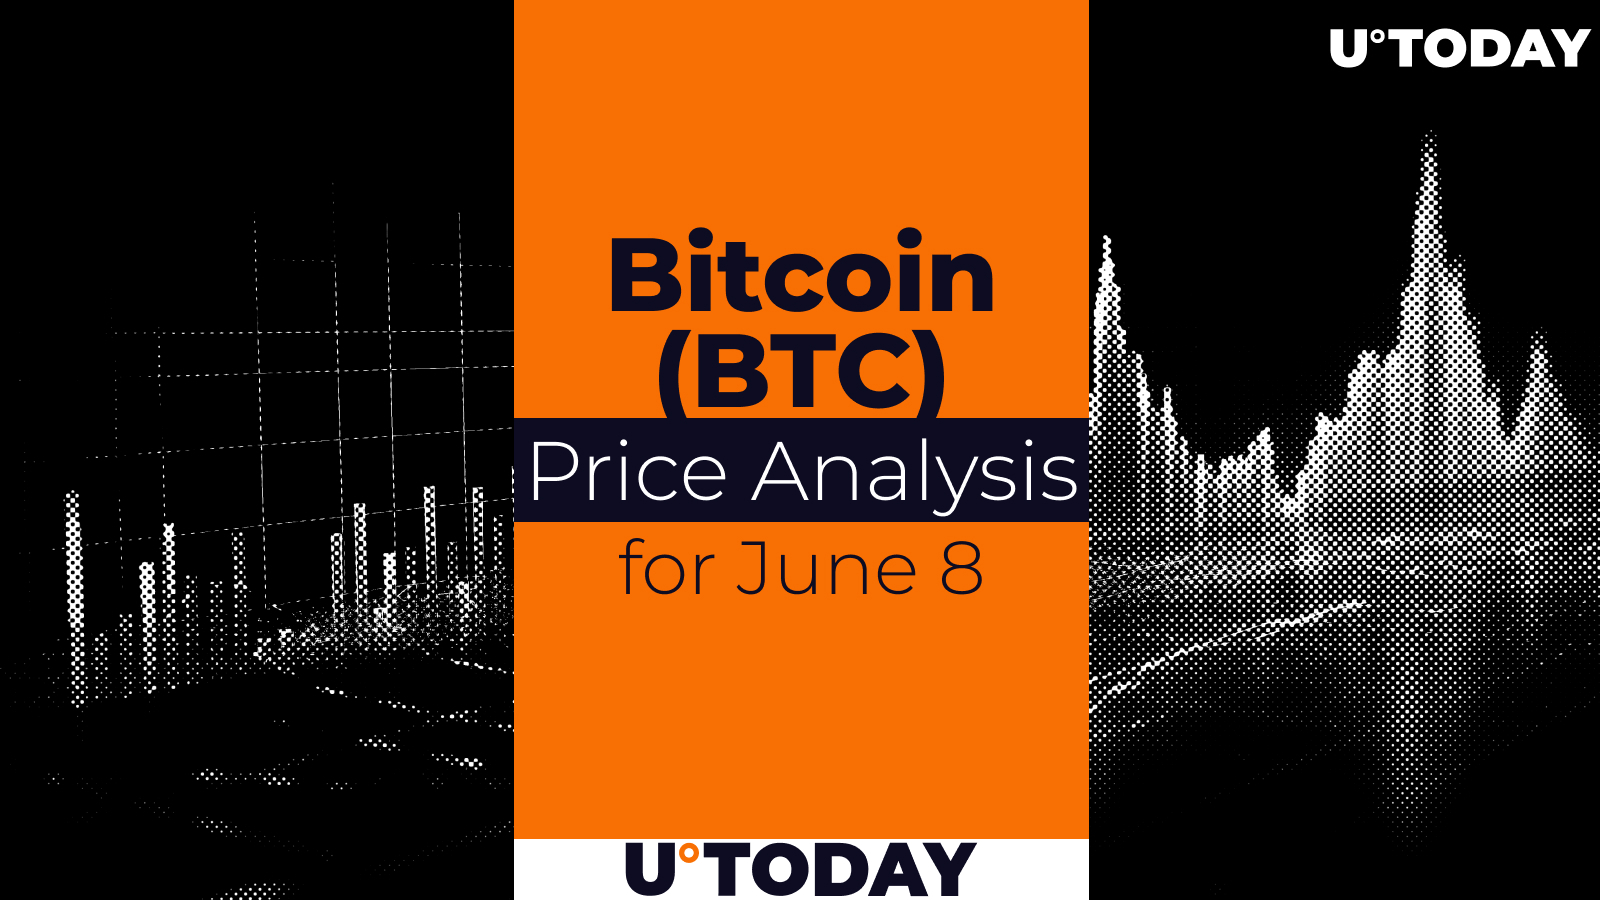 Bitcoin (BTC) Price Prediction for June 8